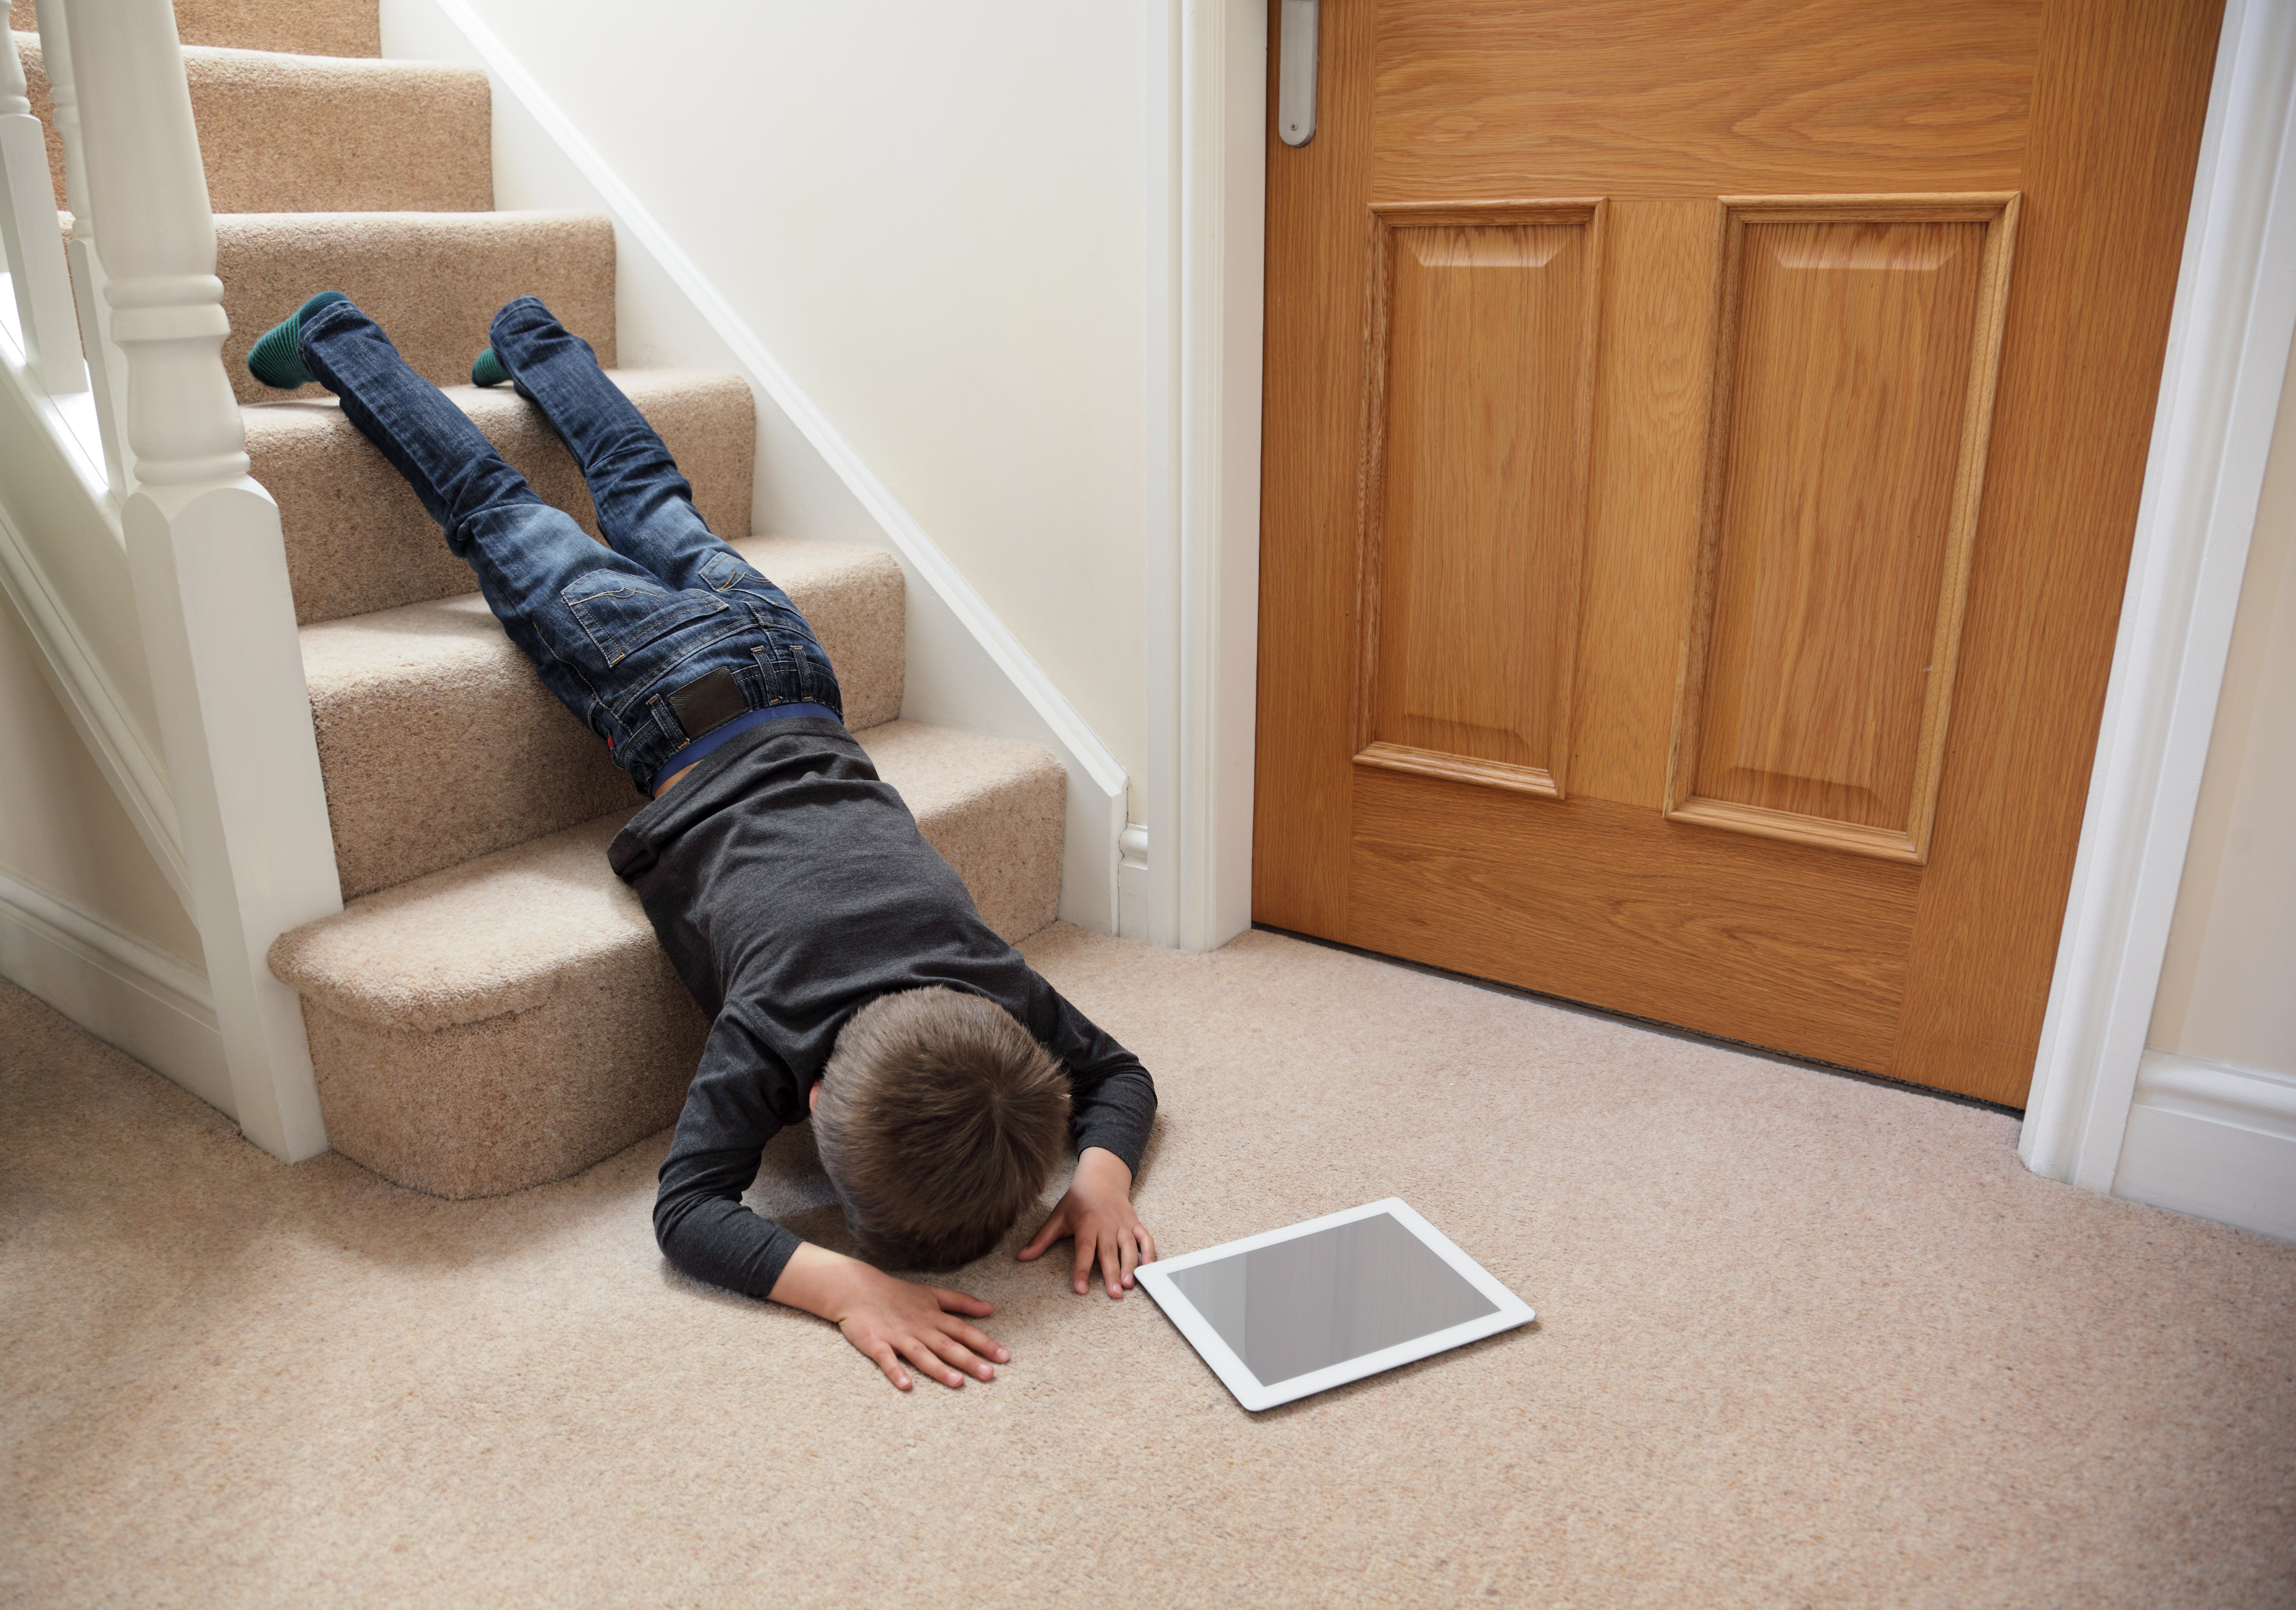 Broken on the floor. Мальчик падает с лестницы. Человек оступился на лестнице.